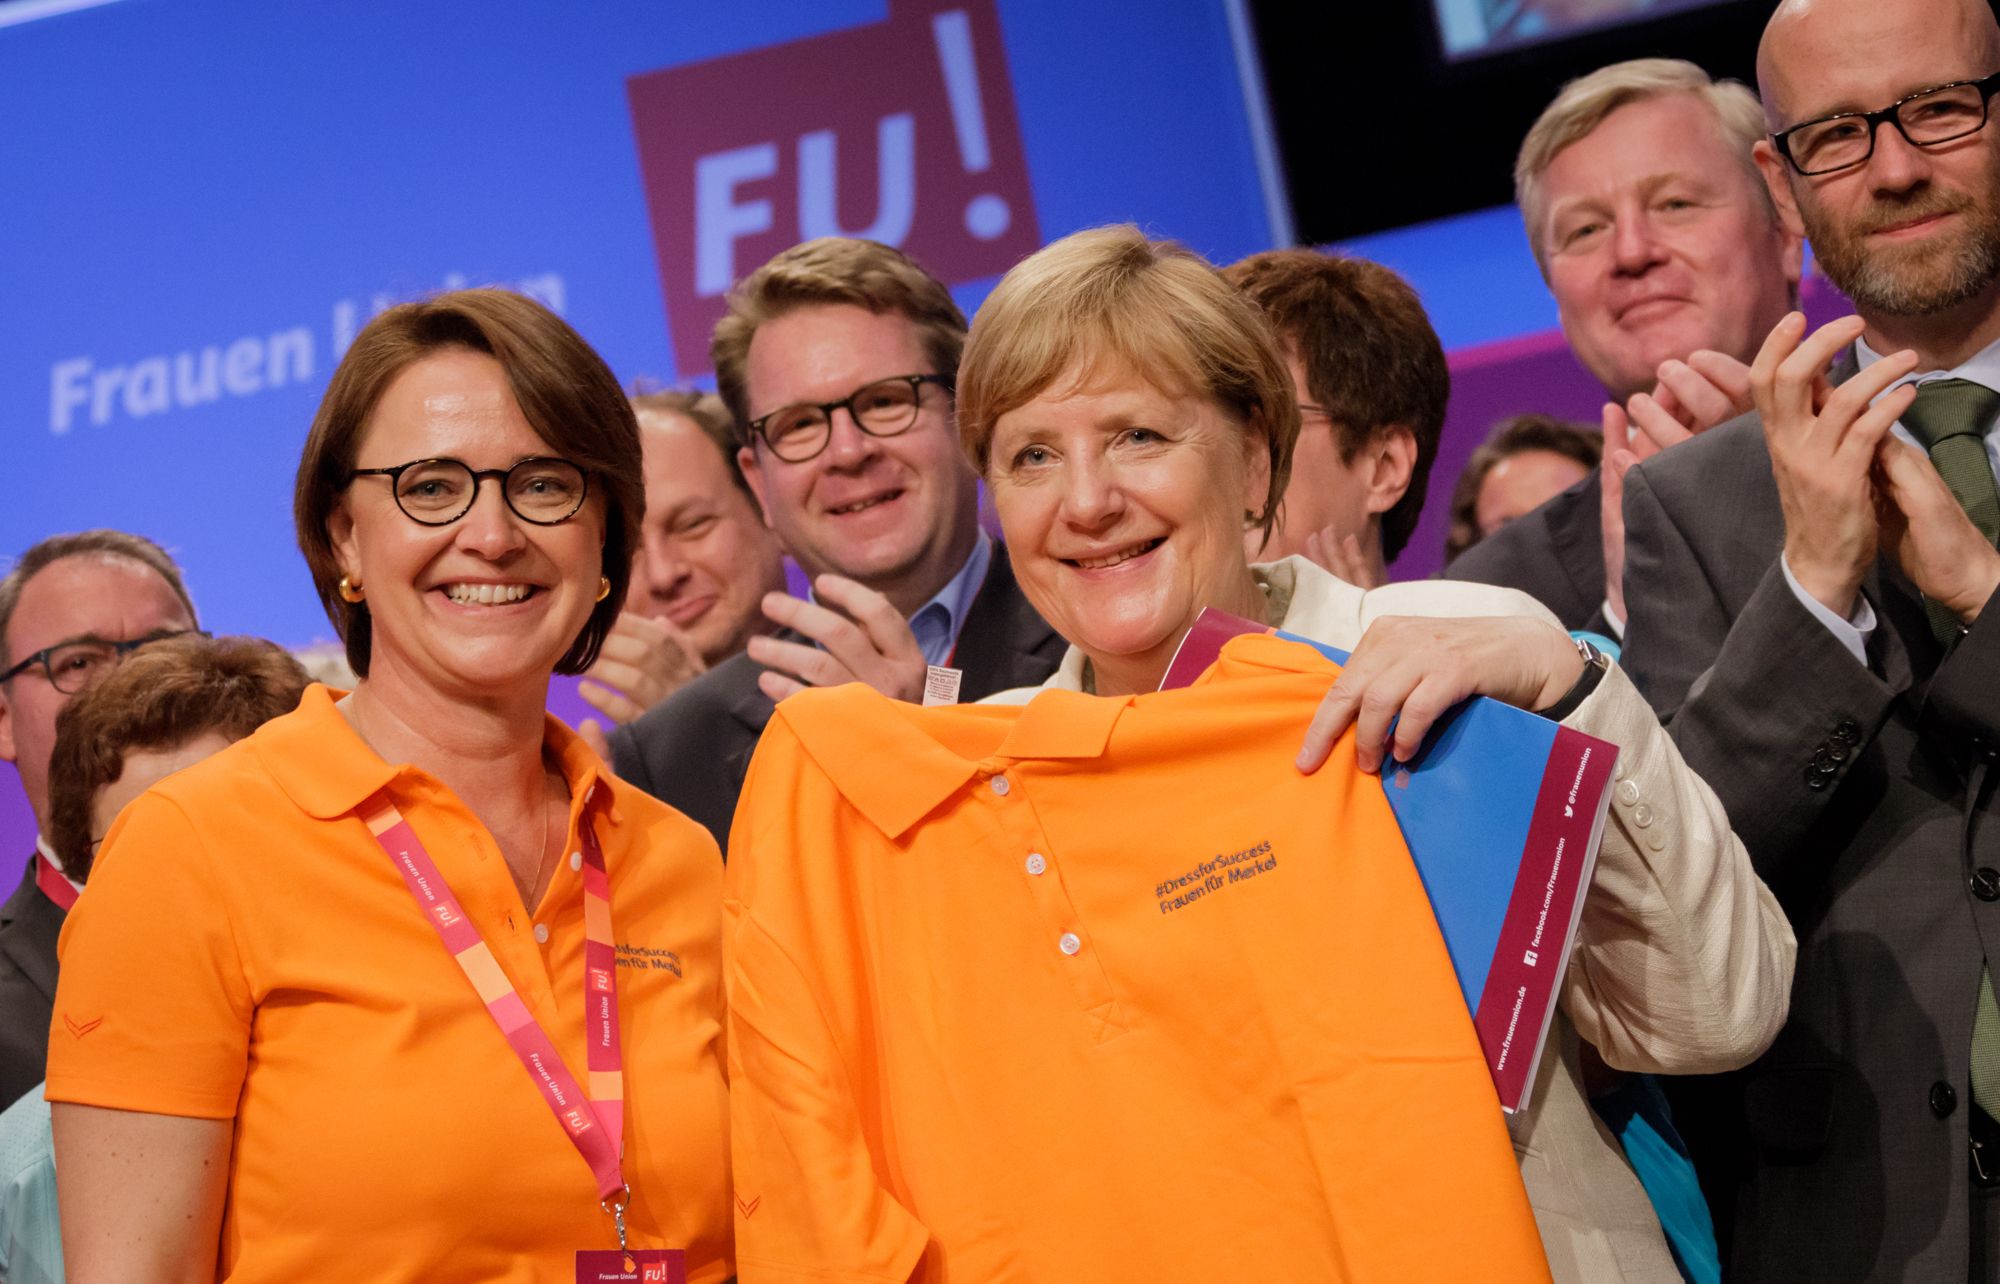 Polo-Shirt statt Blazer: Widmann-Mauz überreicht der Bundekanzlerin Mode aus Burladingen